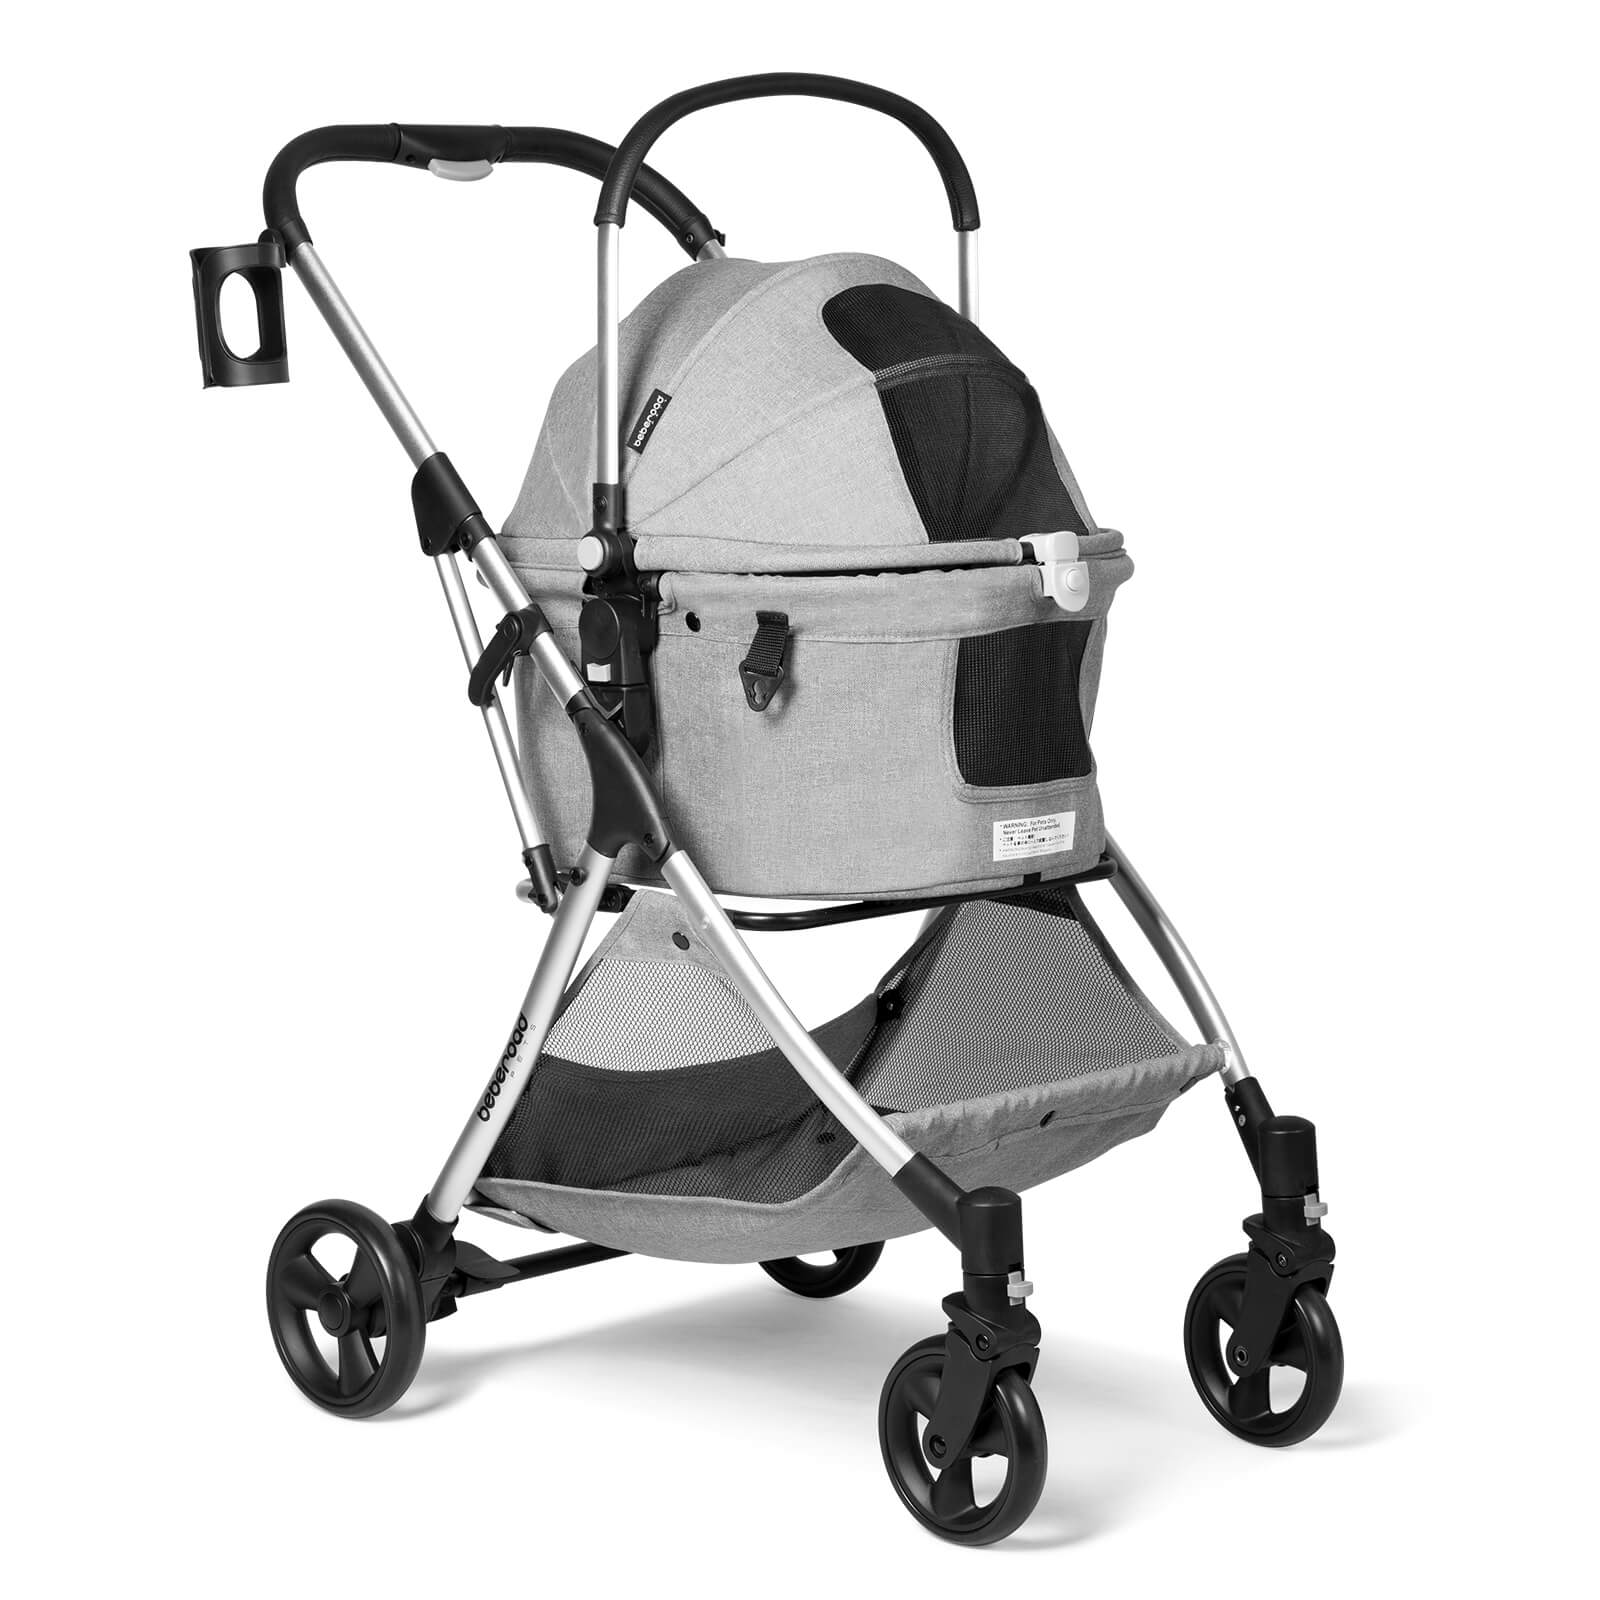 R5 Pet Stroller - Outlet Deal Item